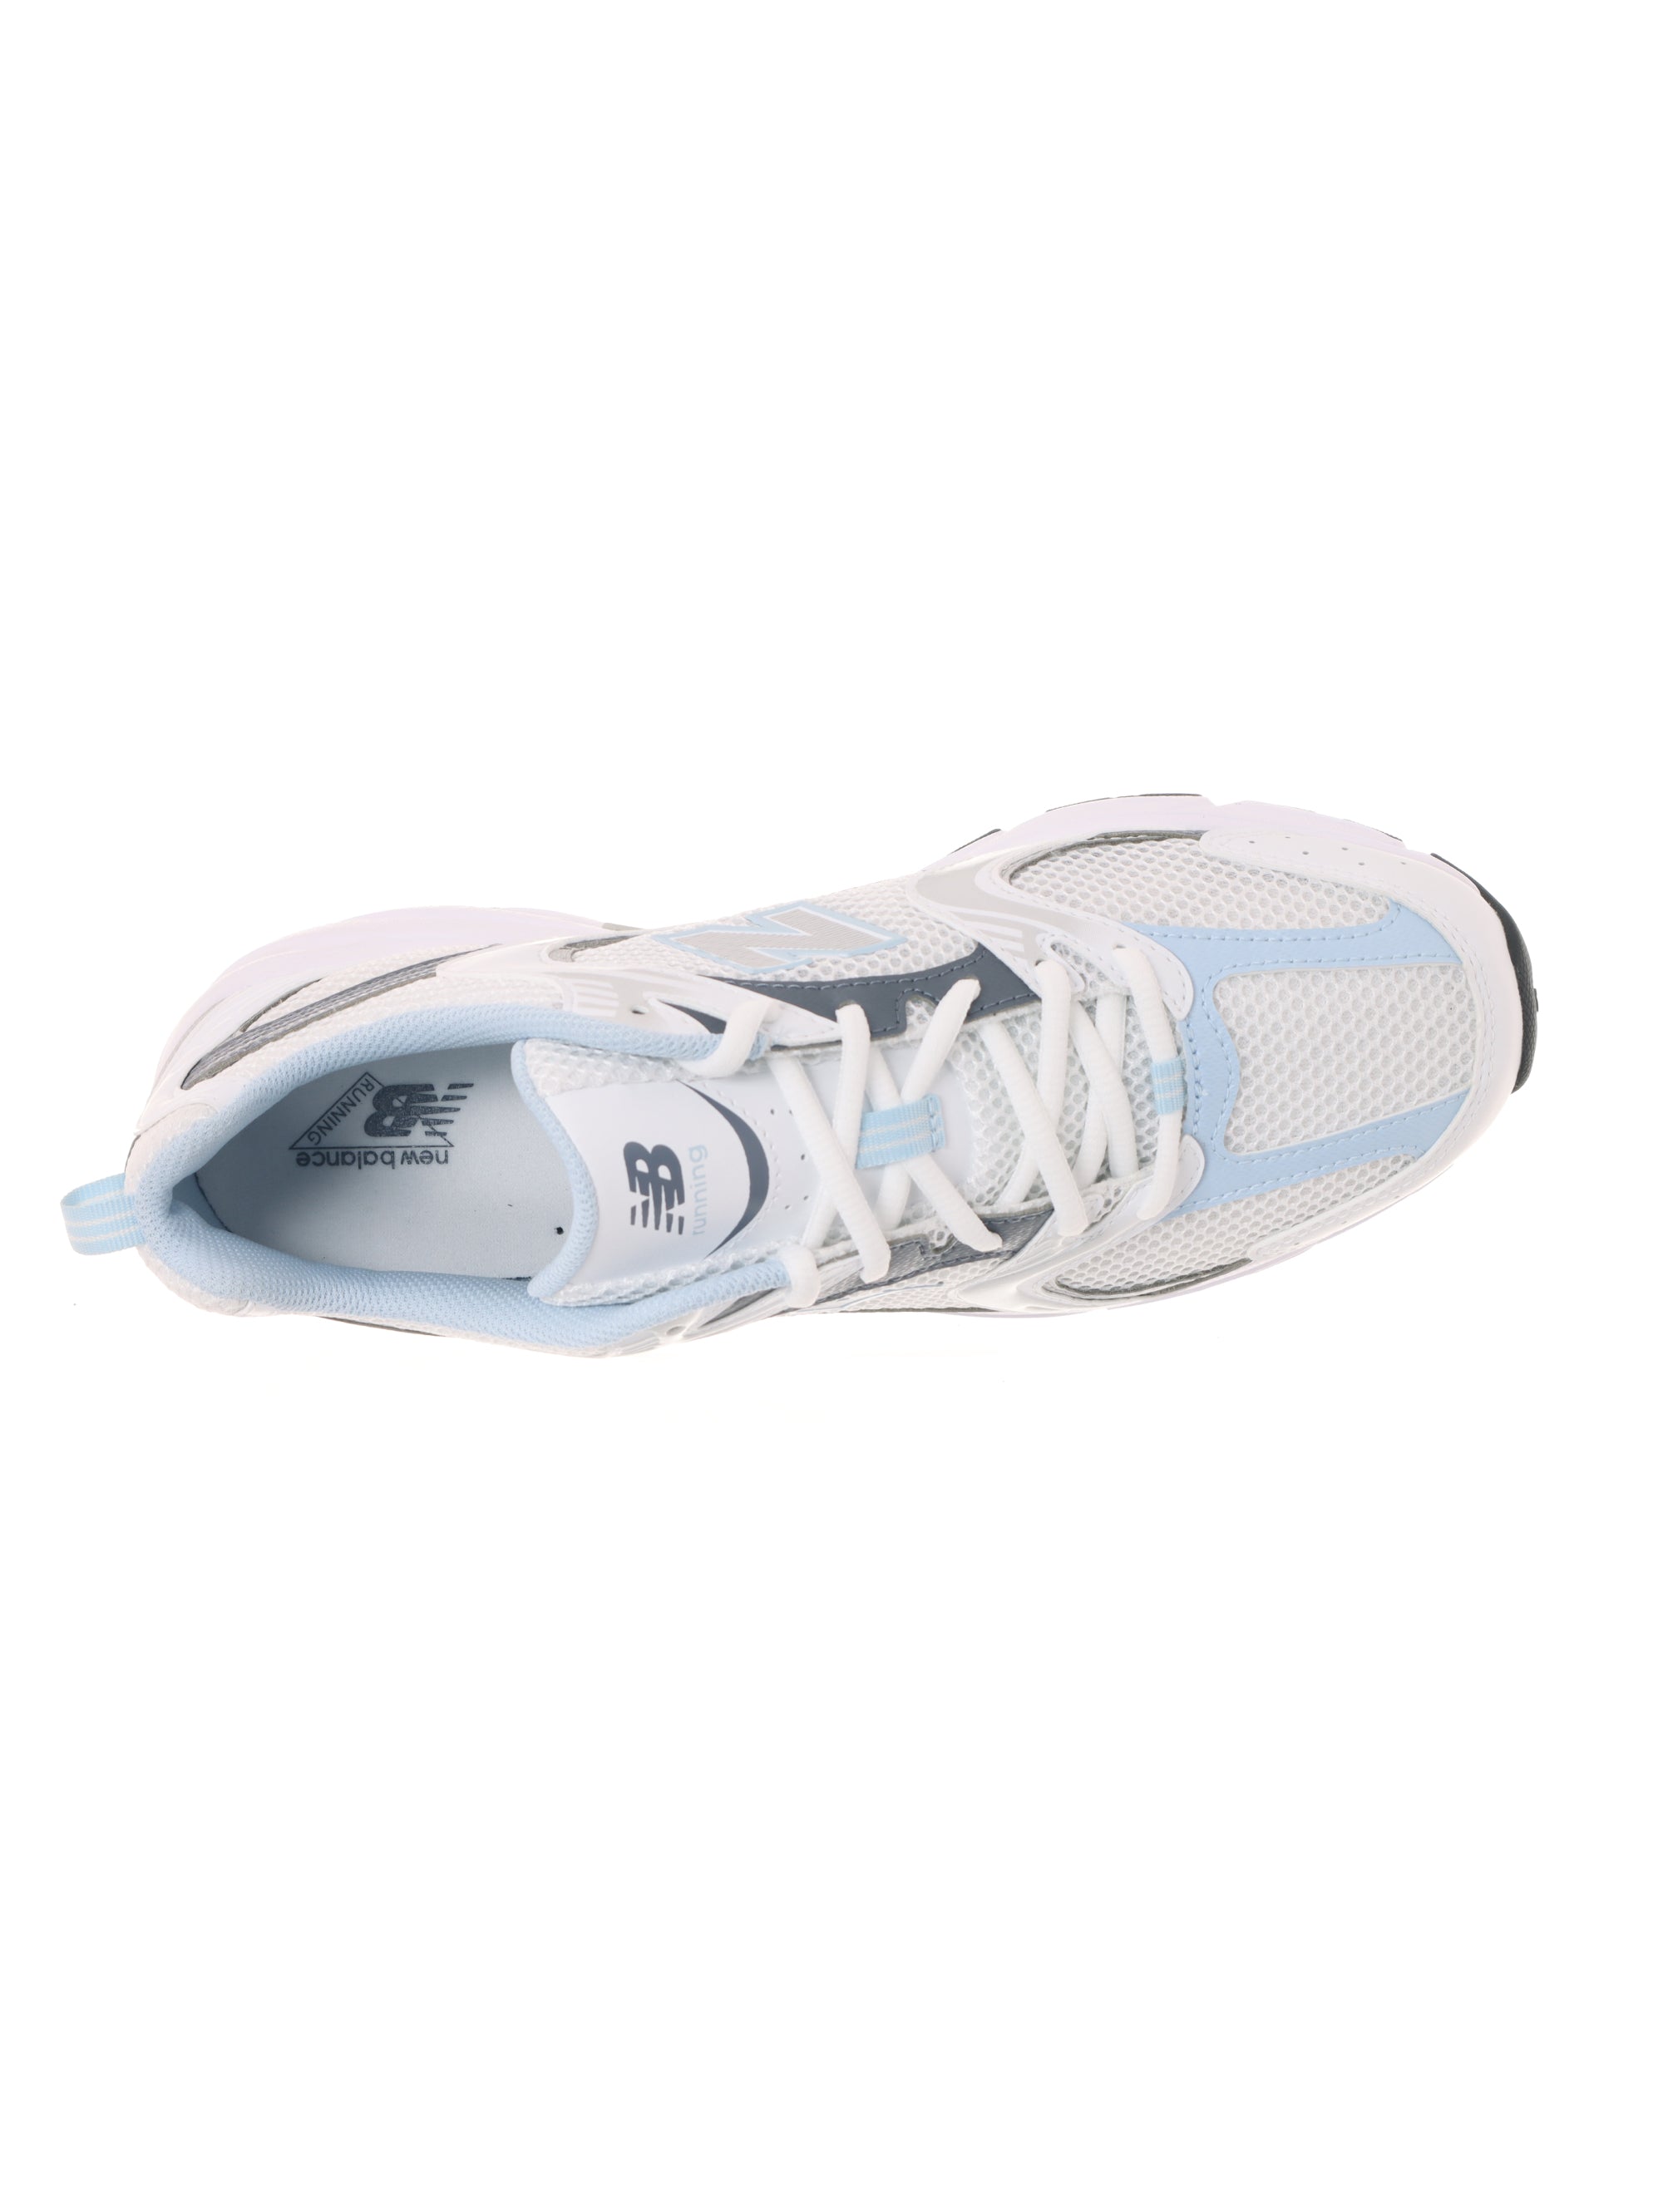 530 Damen-Sneaker Lifestyle Reflection Weiß/Blau/Grau